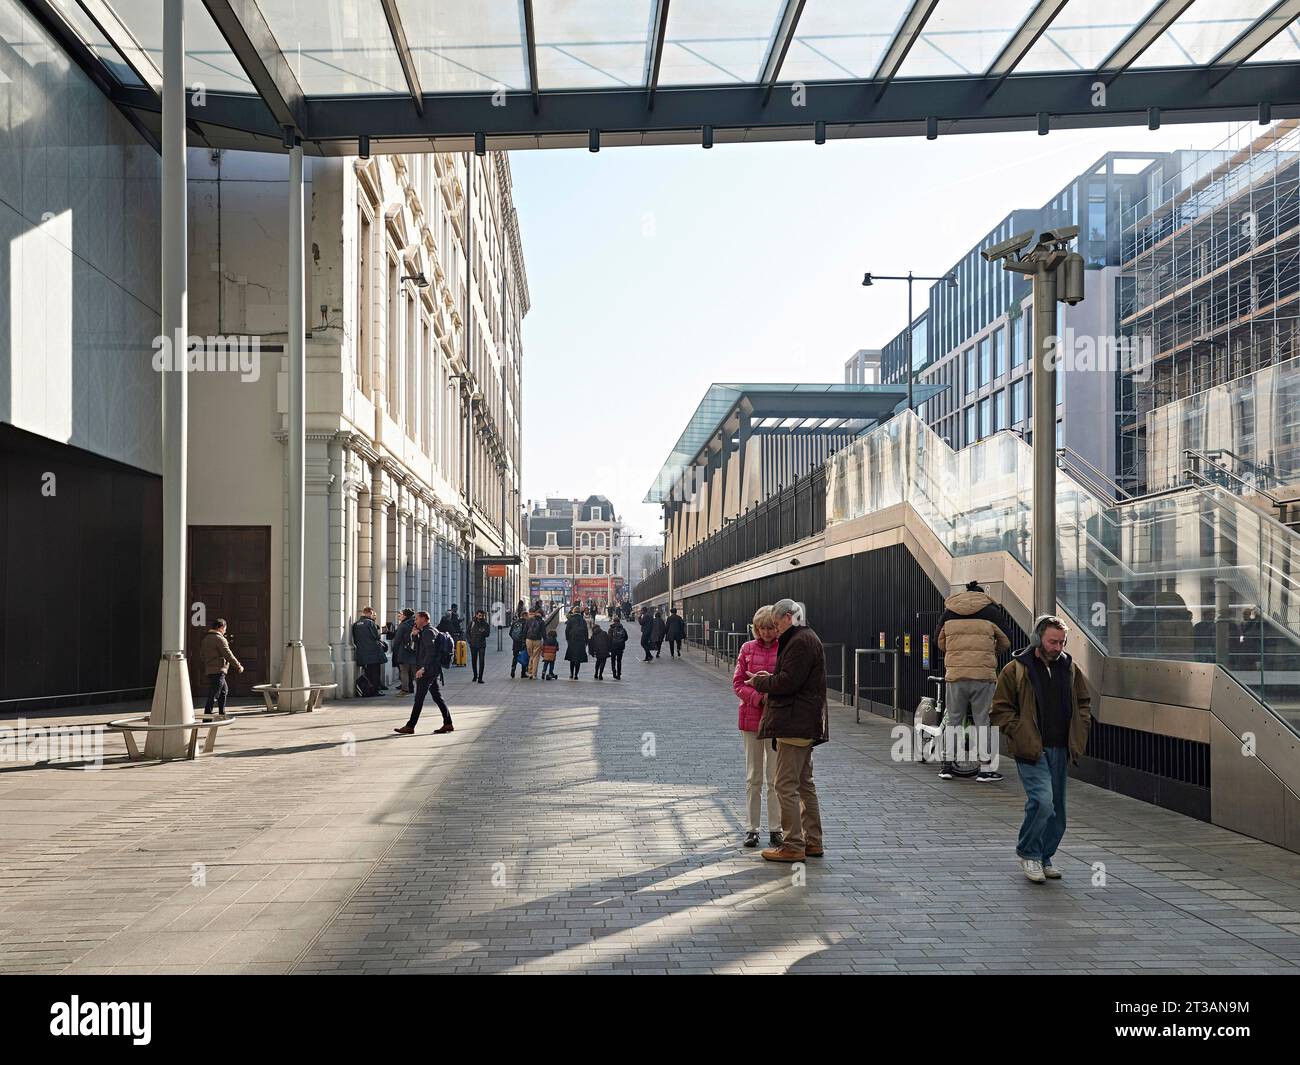 Approche de l'entrée de la gare. Gare Paddington Elizabeth Line, Londres, Royaume-Uni. Architecte : Weston Williamson + associés , 2022. Banque D'Images